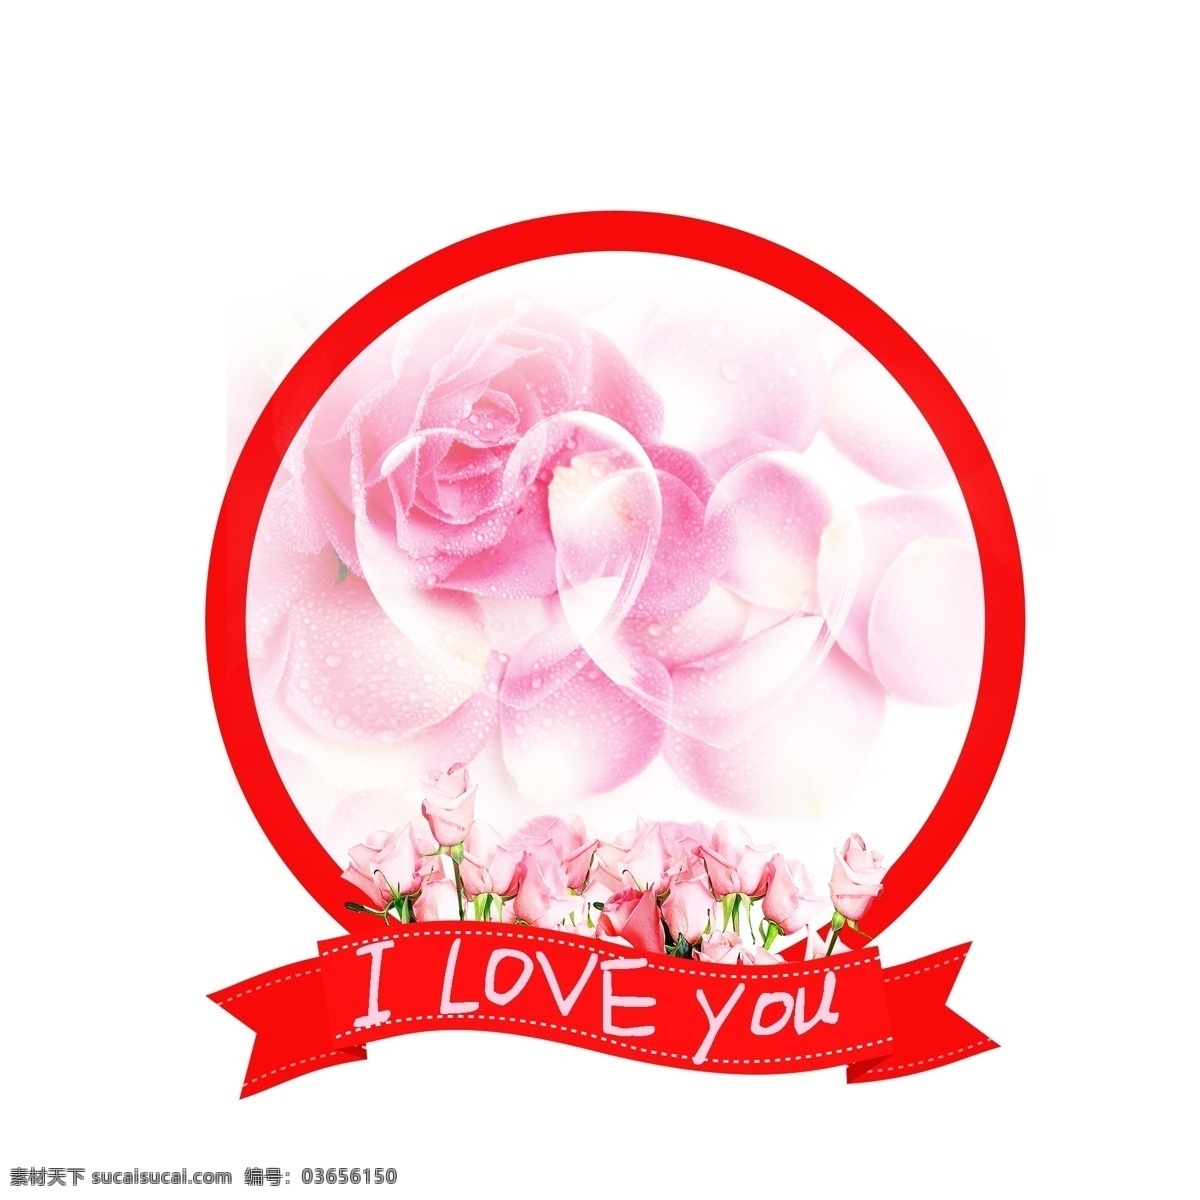 唯美 520 情人节 边框 唯美边框 粉红色 浪漫边框 卡通 可爱边框 清新边框 彩色边框 粉红色边框 粉红色玫瑰花 花朵